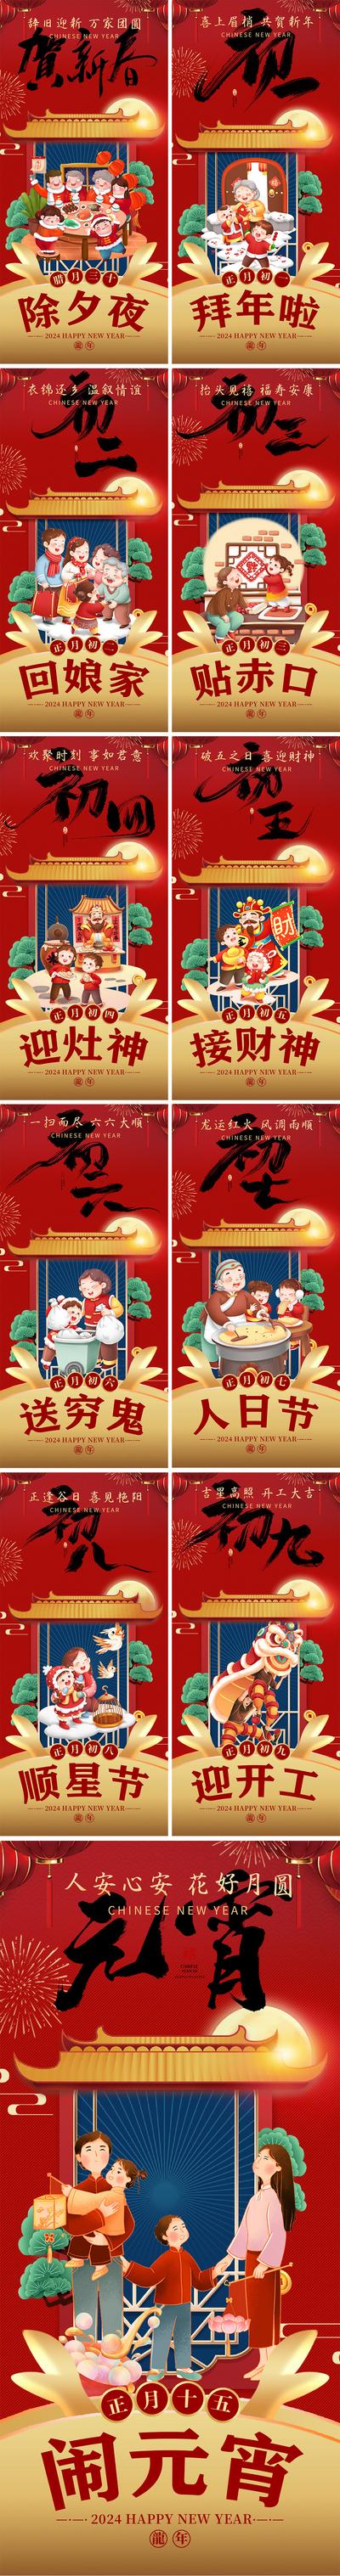 南门网 春节年俗系列海报